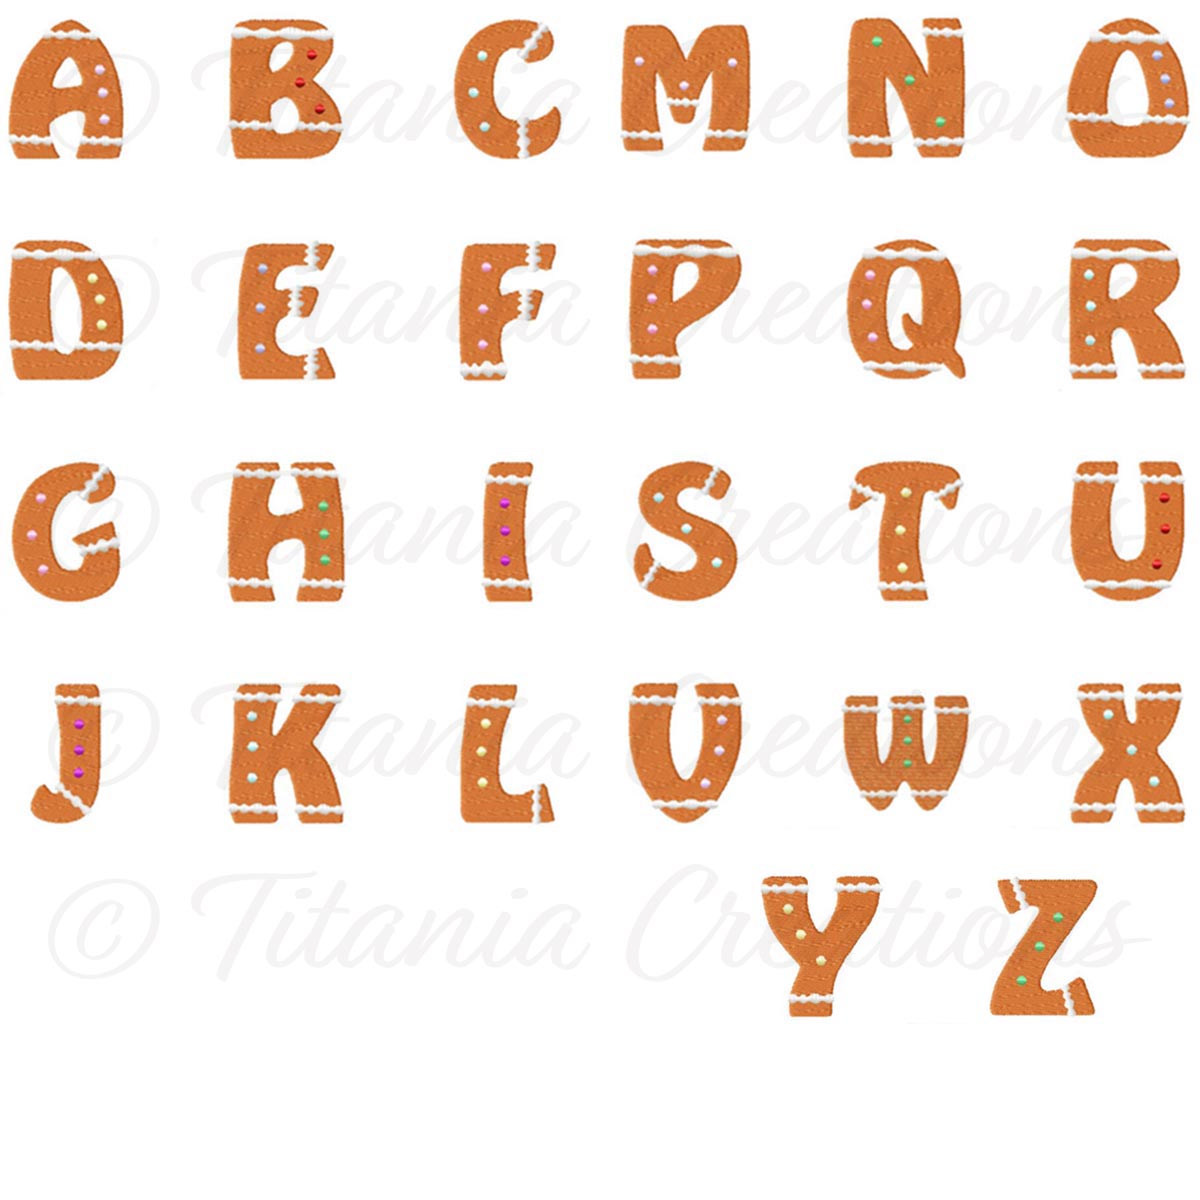 Ginger Alphabet 4x4